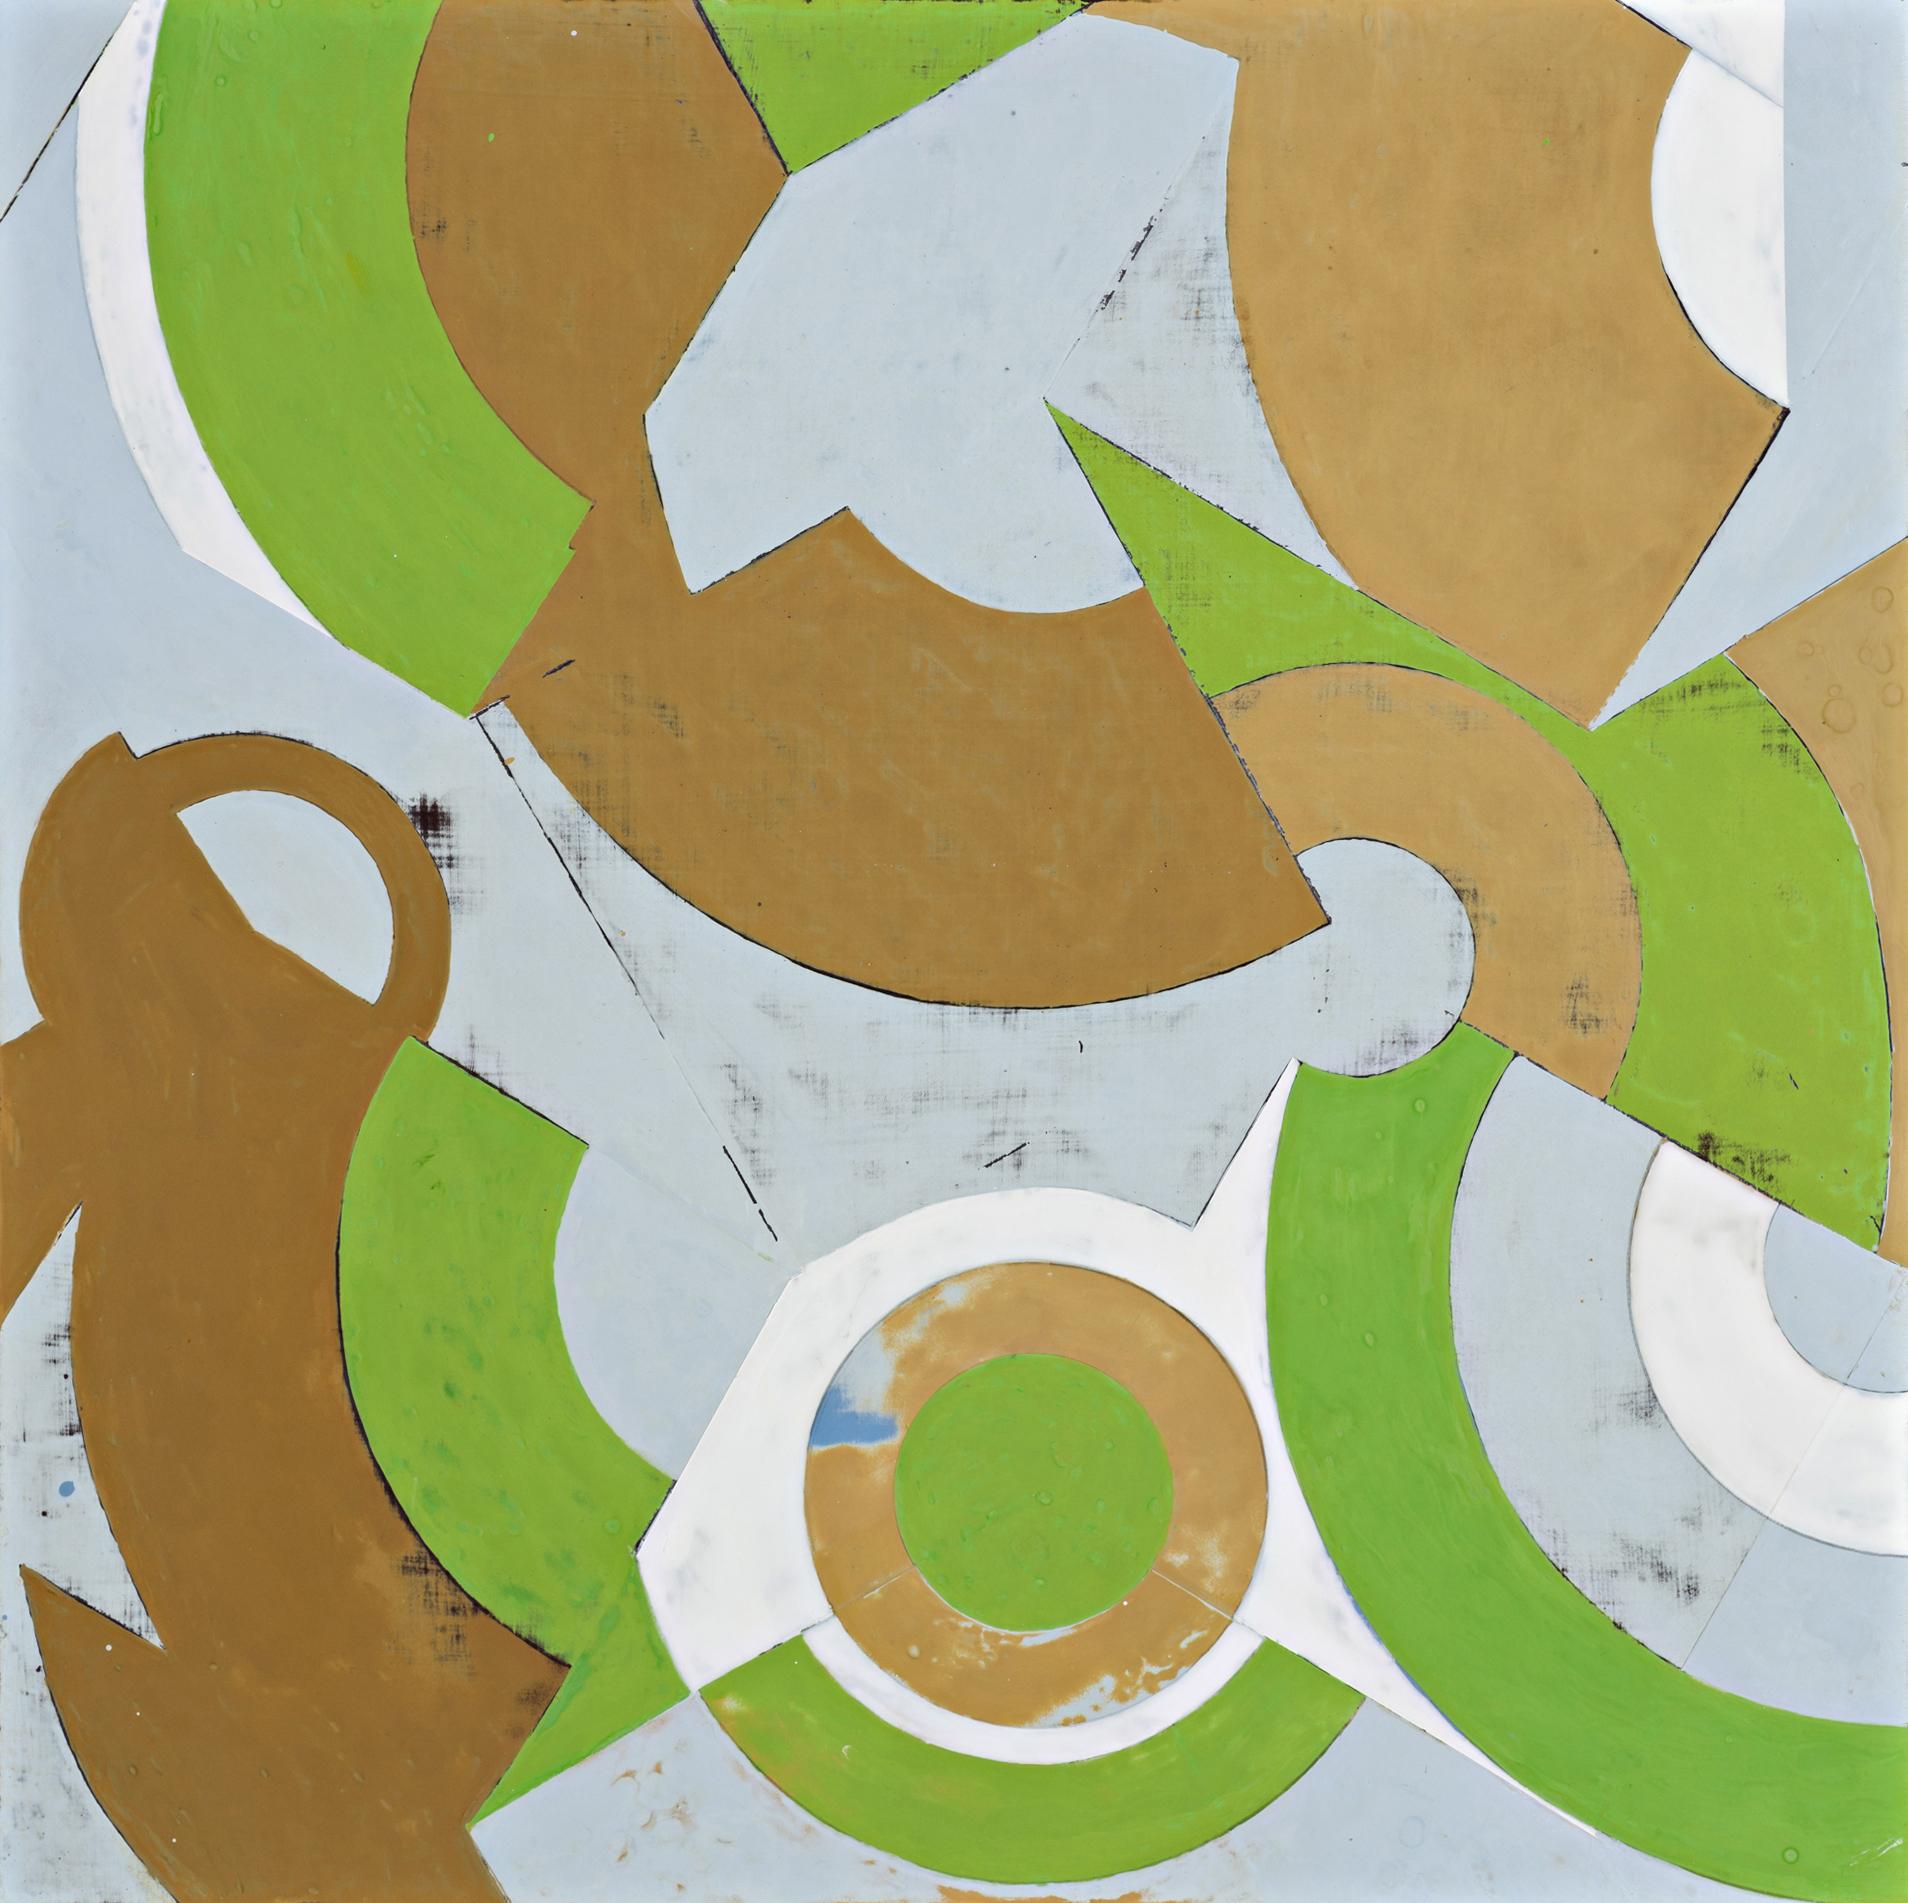 Abstract Painting Jeanette Fintz - Plan du printemps n° 2 (peinture abstraite géométrique en vert, beige et bleu clair)